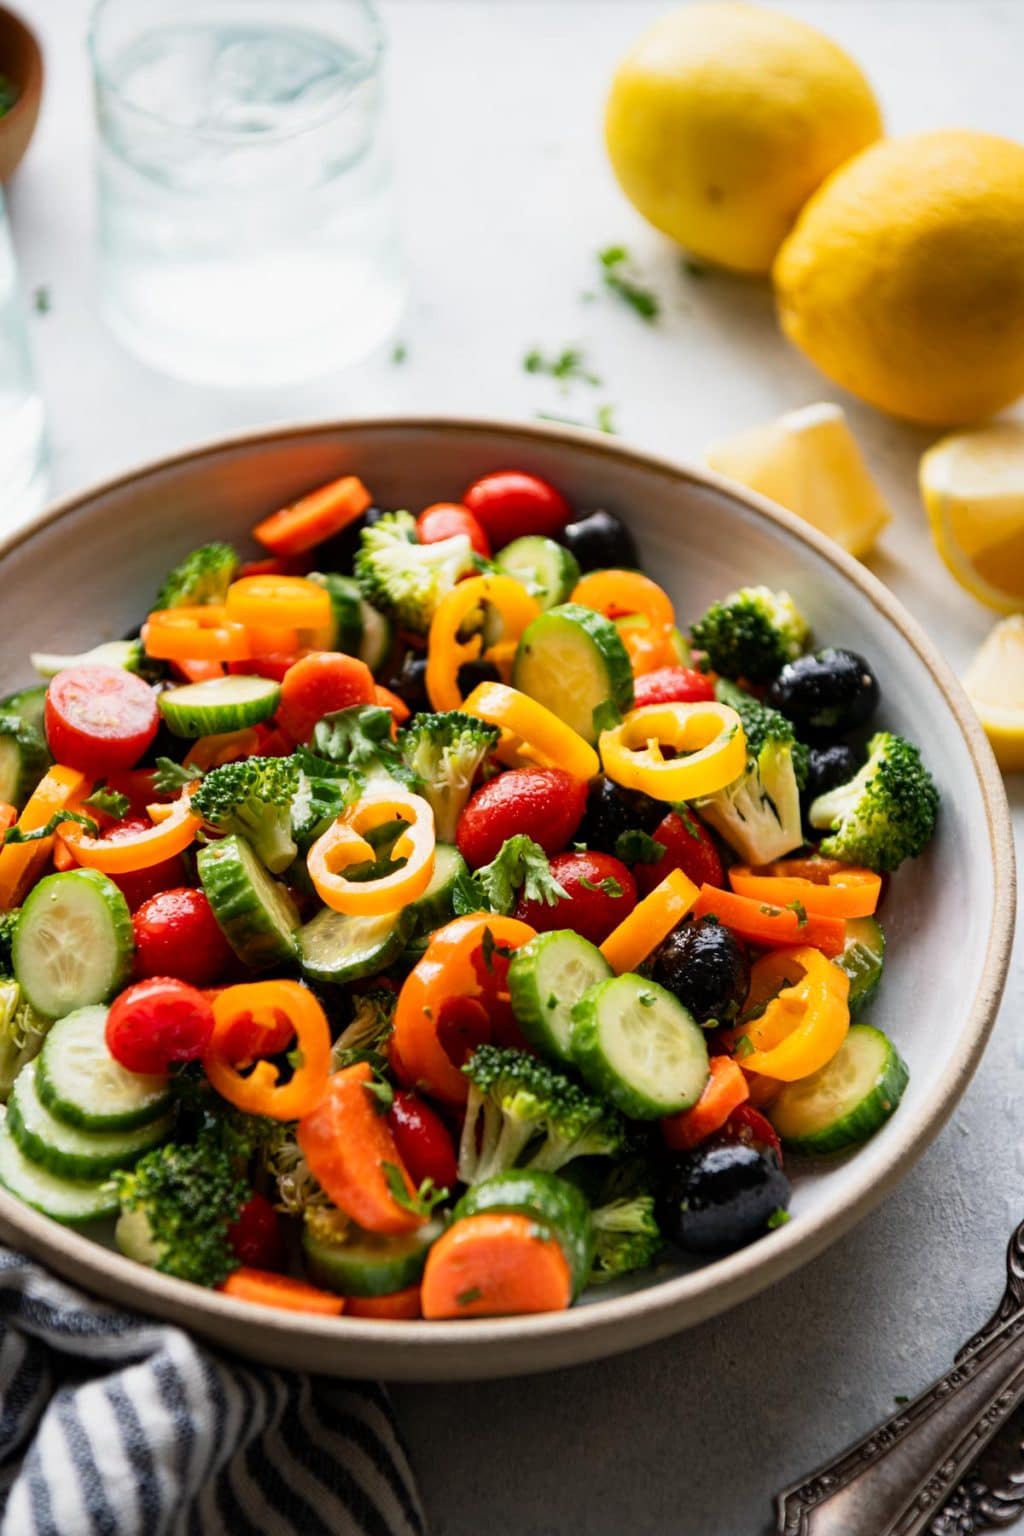 Marinated Vegetable Salad - The Seasoned Mom